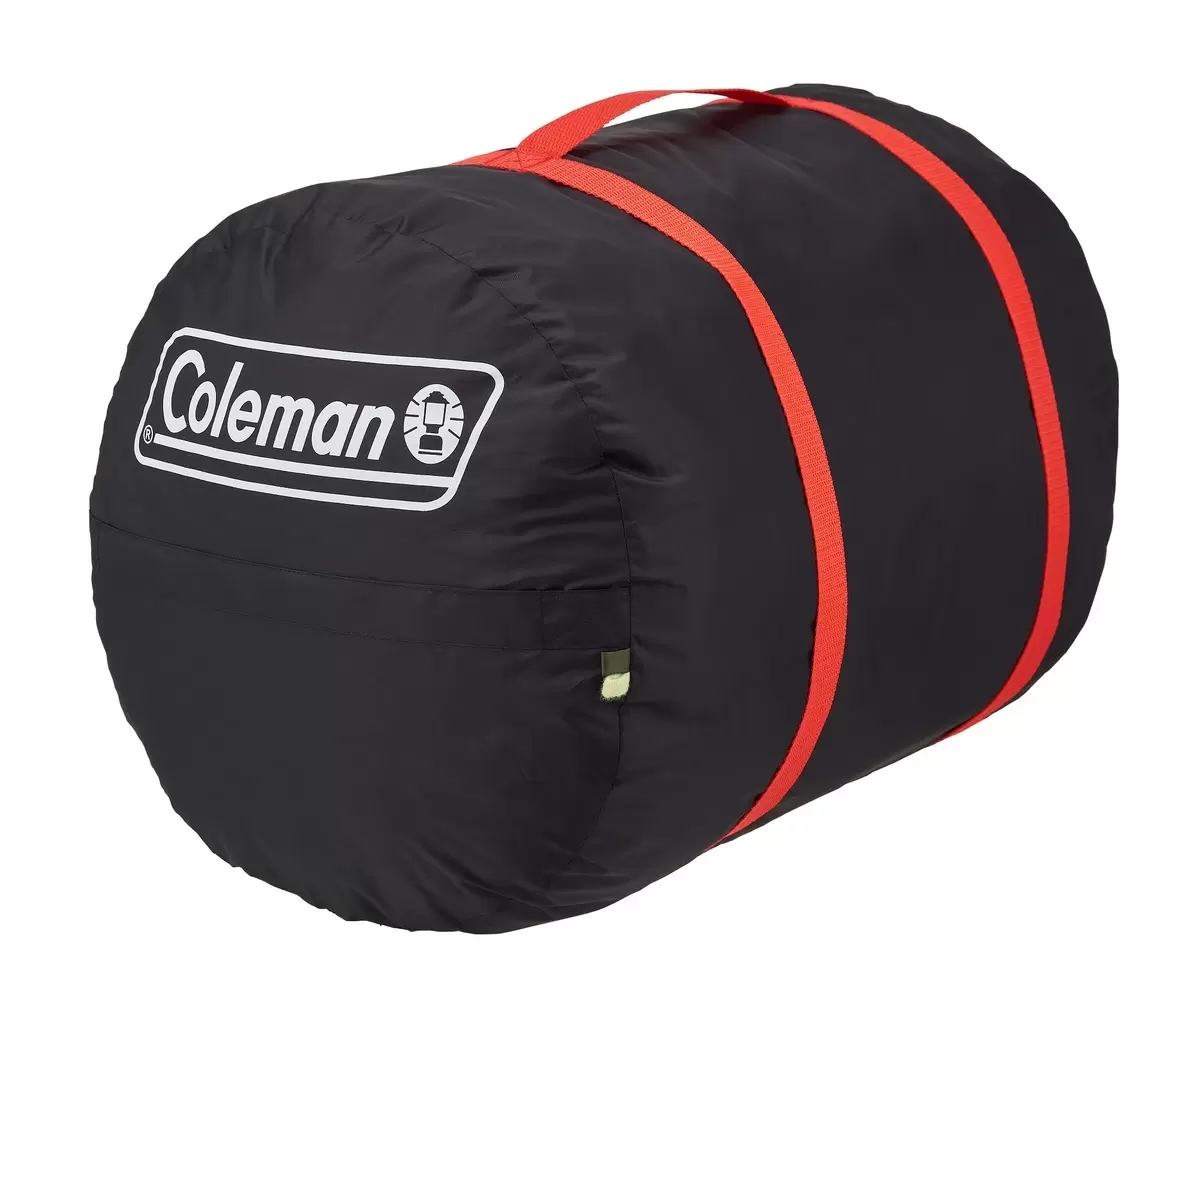 Coleman(コールマン) ハドソンダブル シュラフ 寝袋 2人用 封筒型 -13